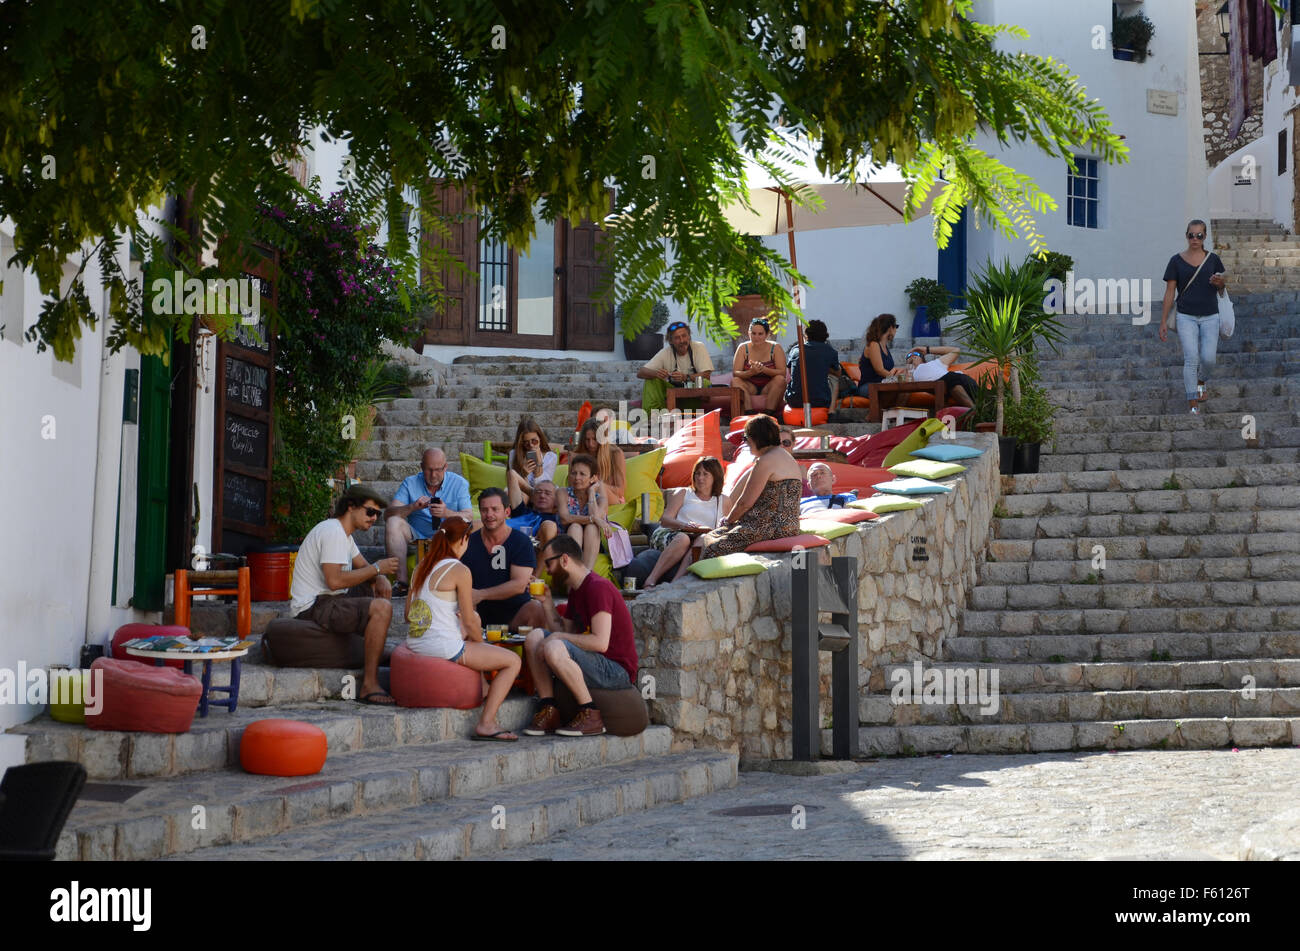 S'escalinata, pub locale nella città vecchia Dalt Vila, Ibiza spagna Foto Stock